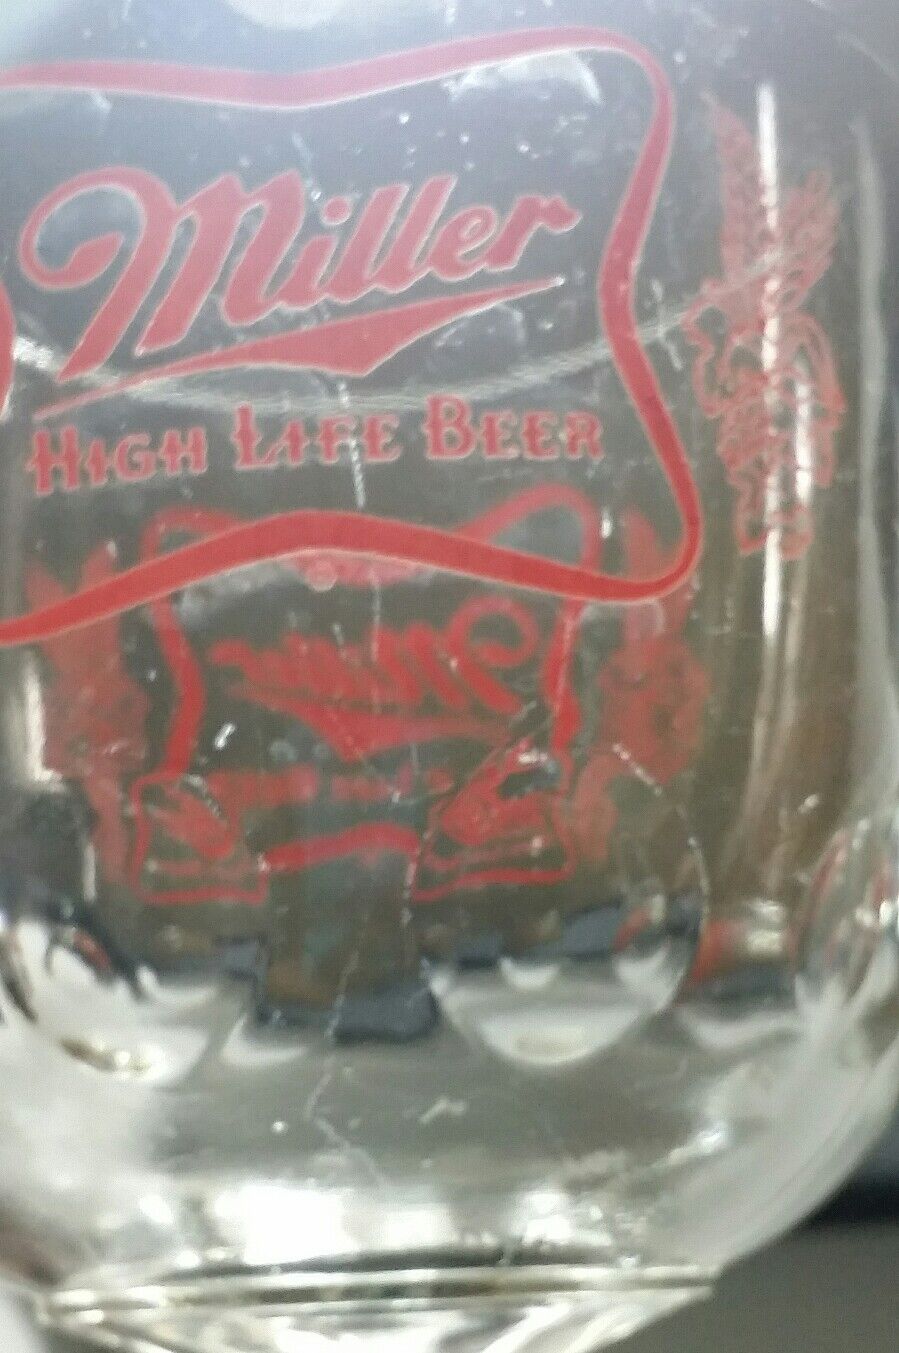 4 Vintage Miller High Life Beer Goblet Glasses Stemmed Chalice Summer Home Bar Miller - фотография #11